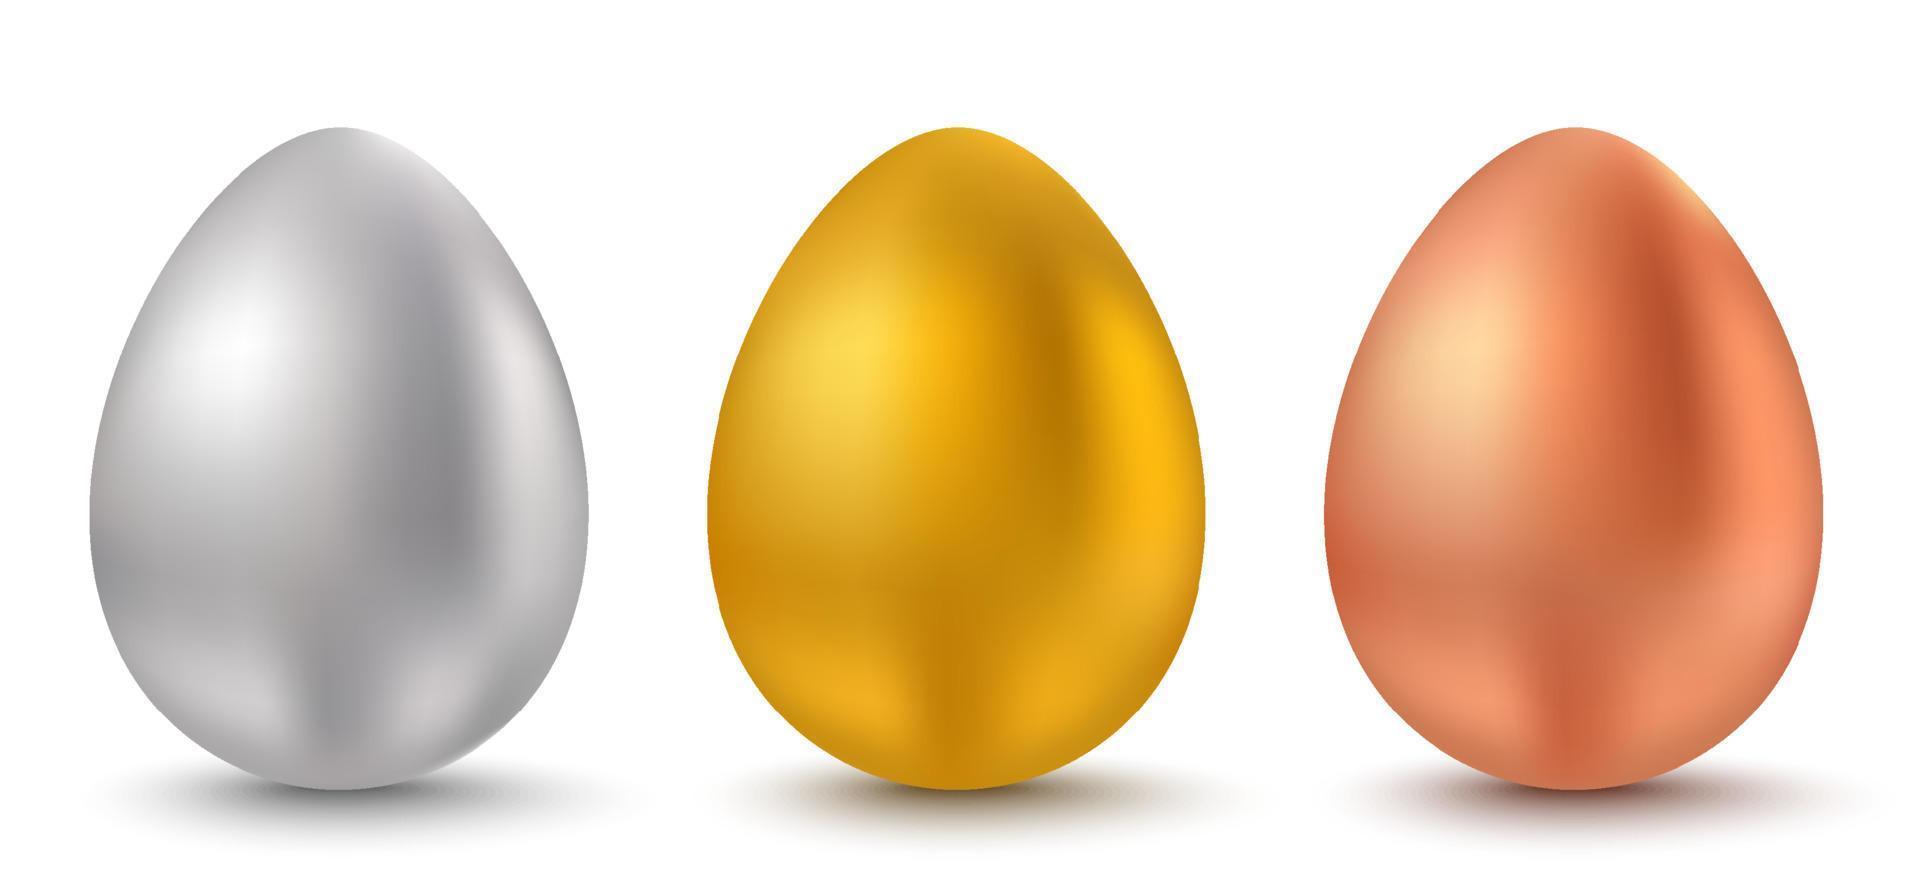 huevos blancos, dorados y de chocolate para pascua. vector